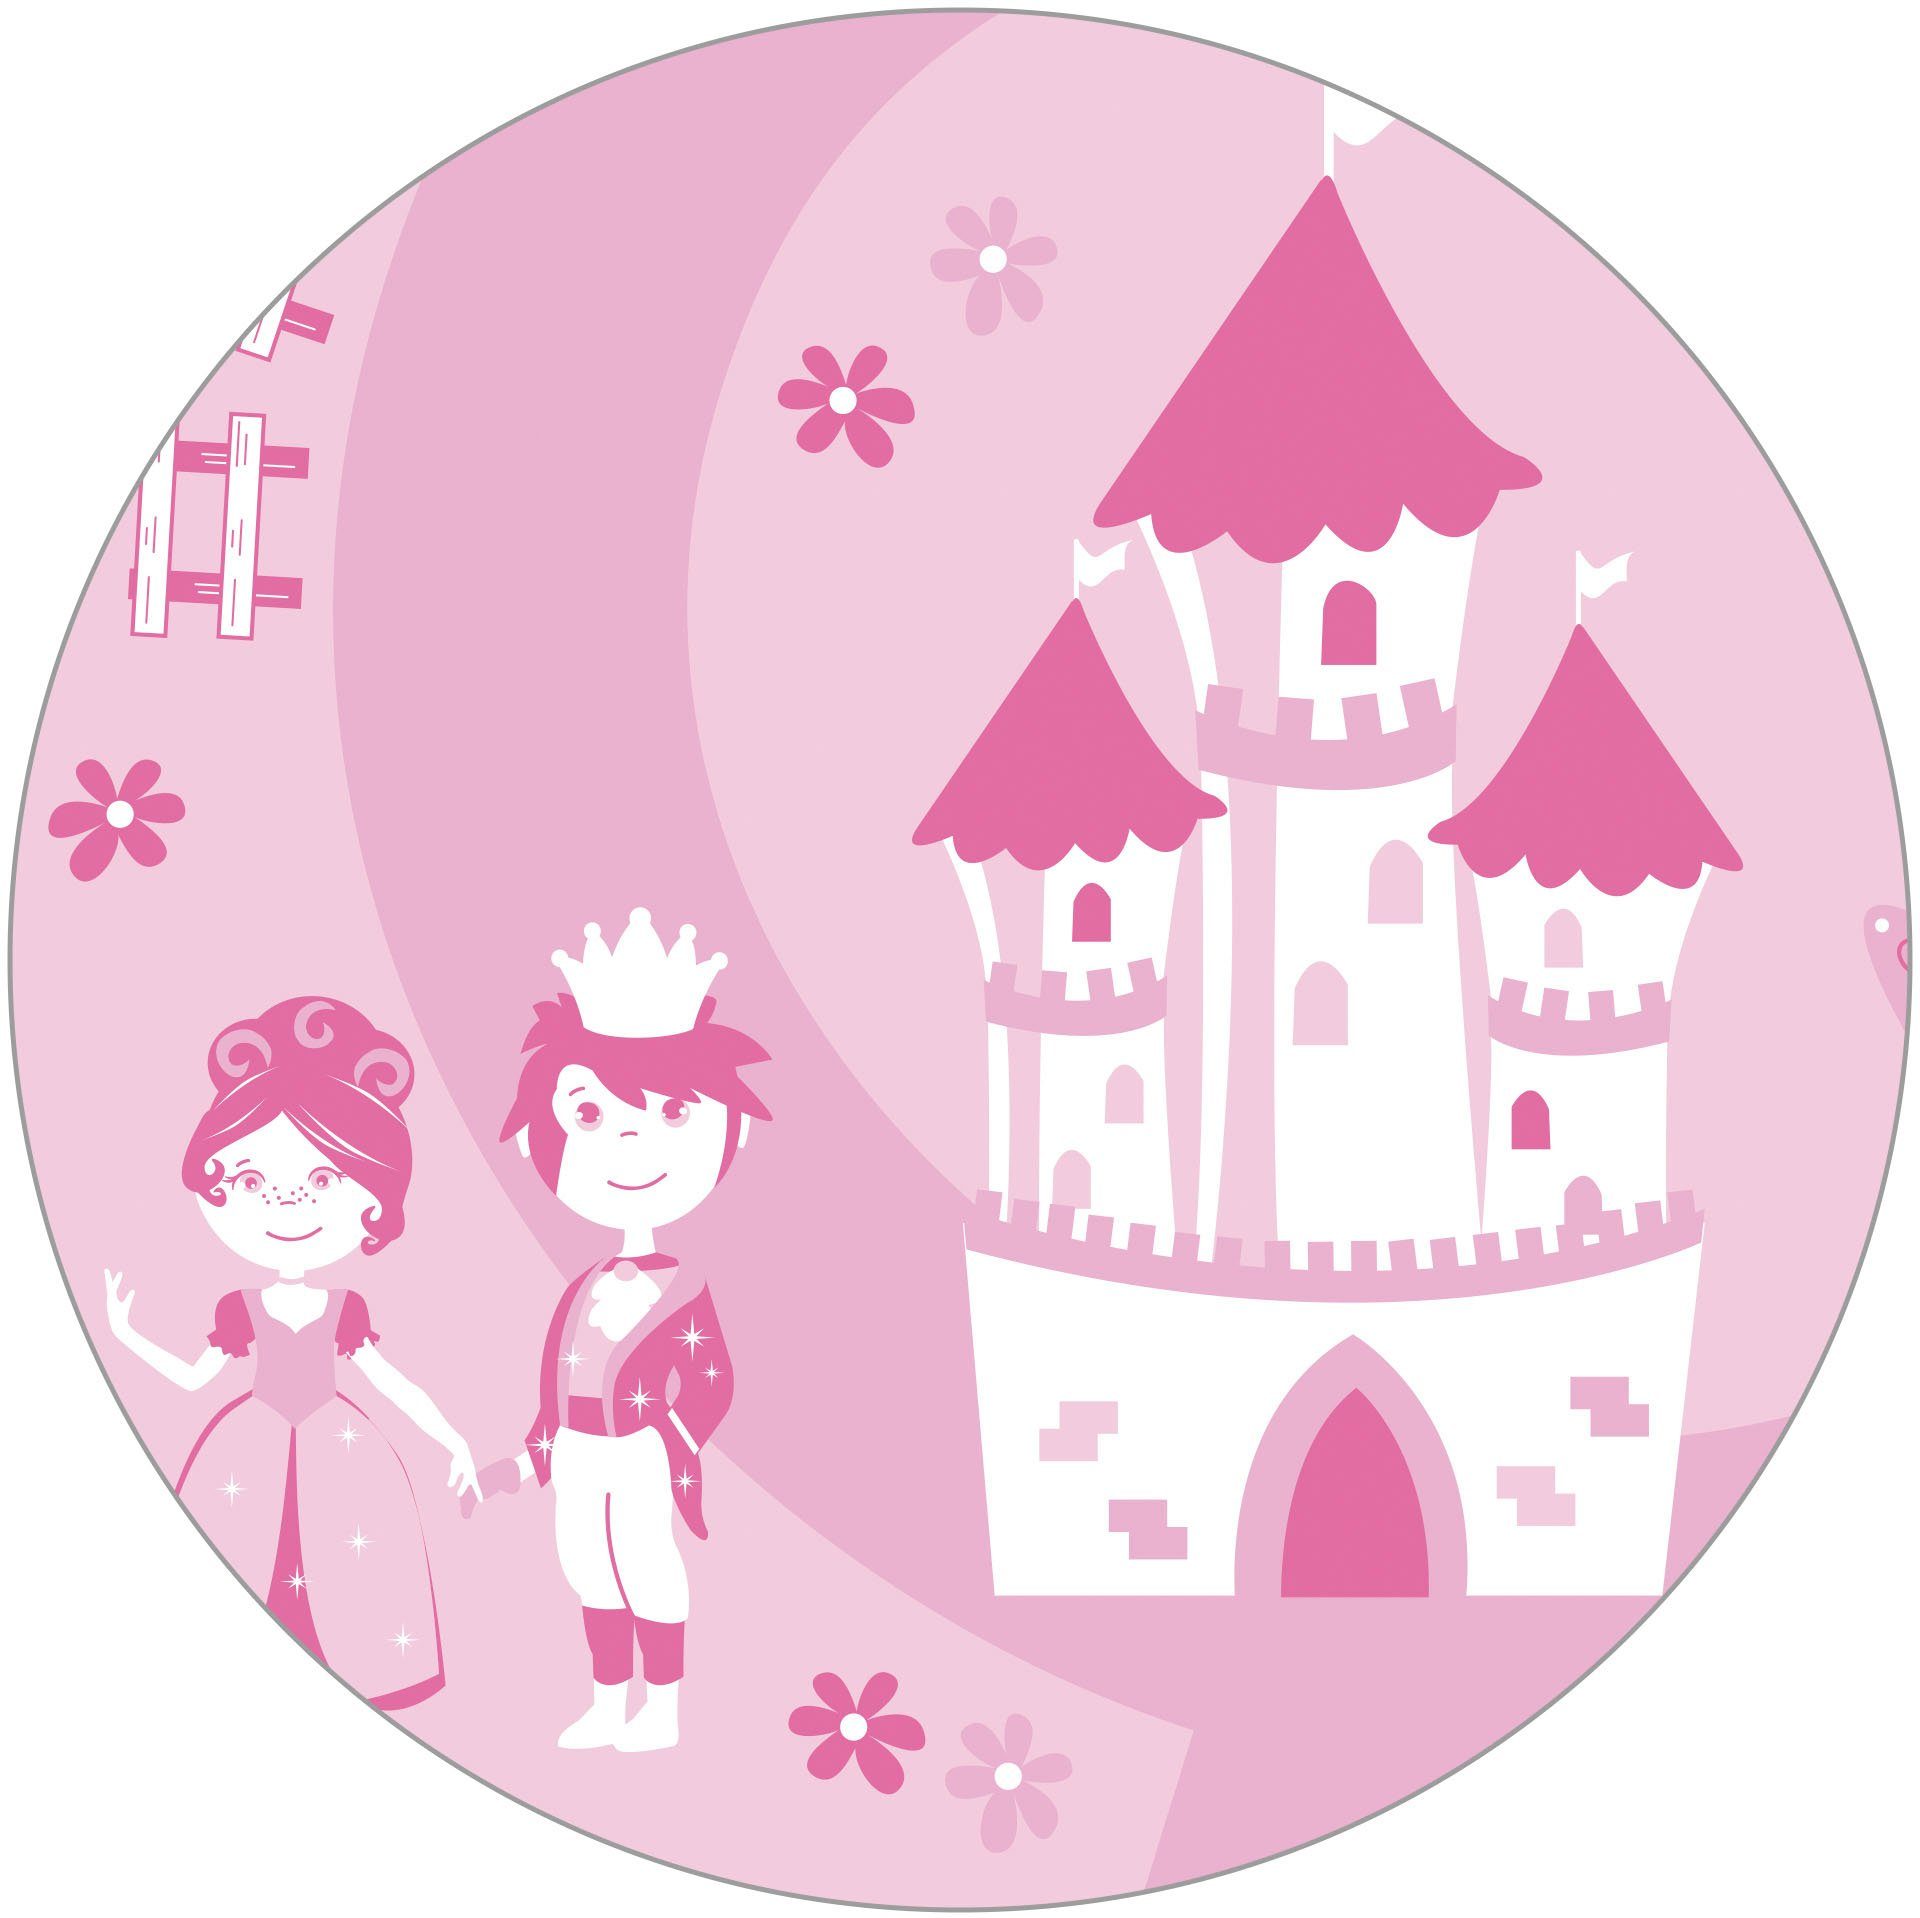 roba® Truhe Krone, rosa/pink, mit Deckelbremse; fürs Kinderzimmer